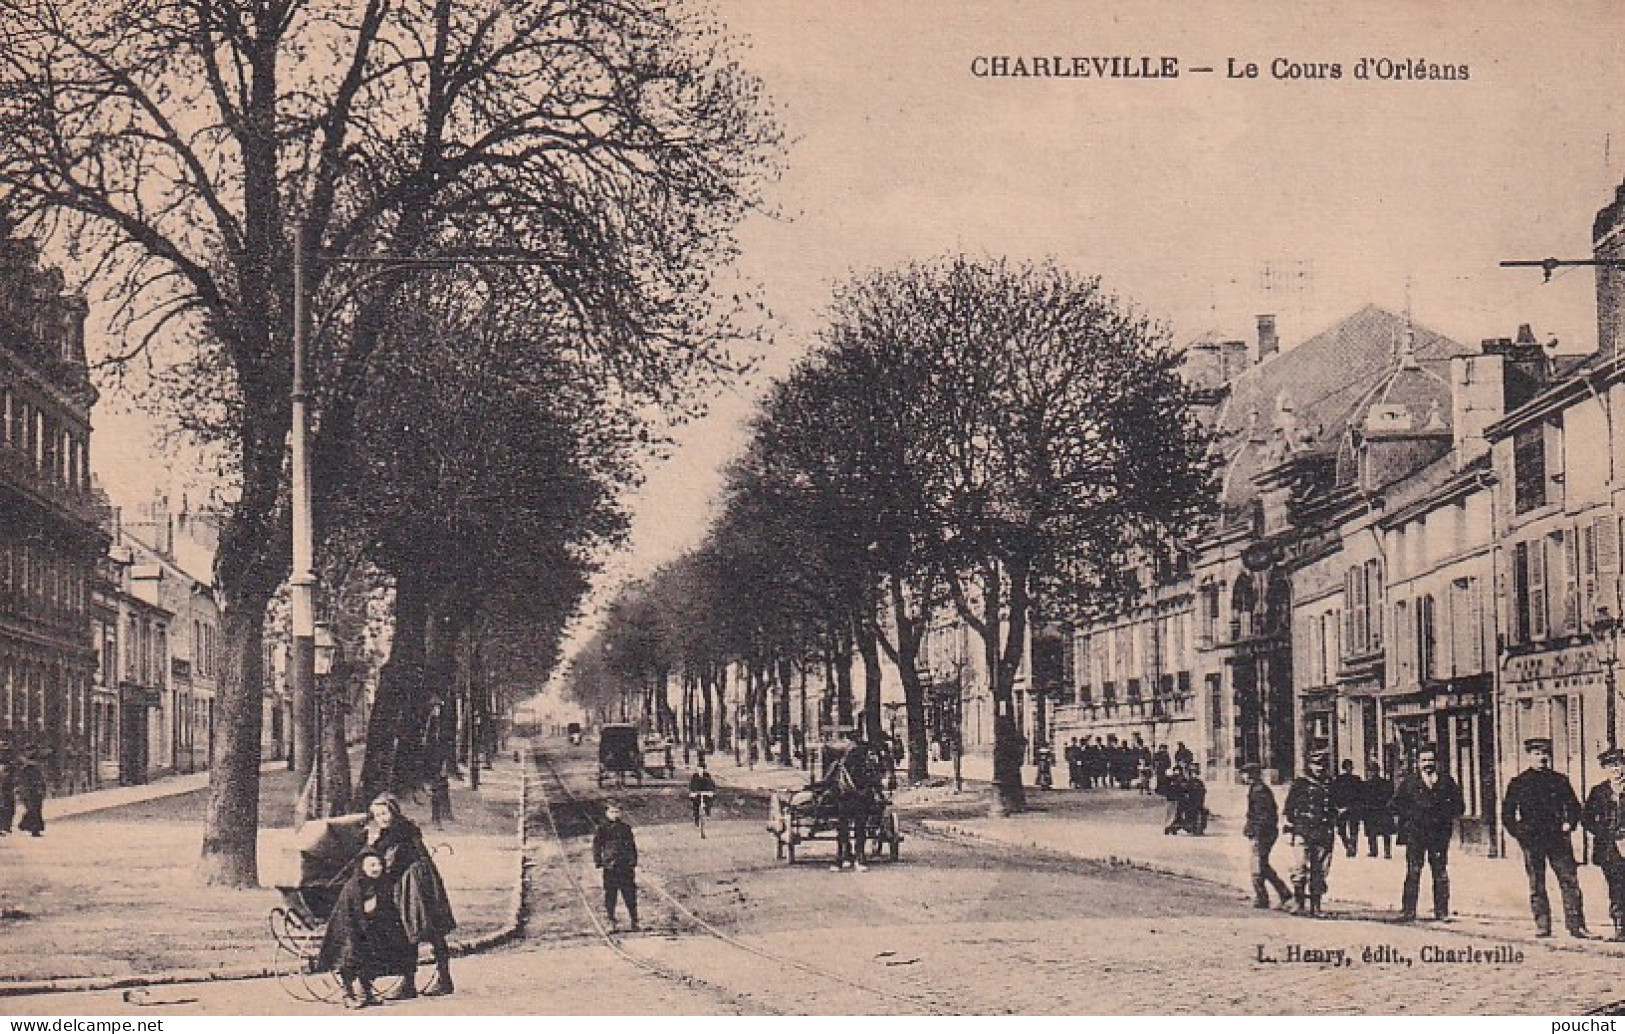 KO 30-(08) CHARLEVILLE - LE COURS D'ORLEANS - ANIMATION - Charleville